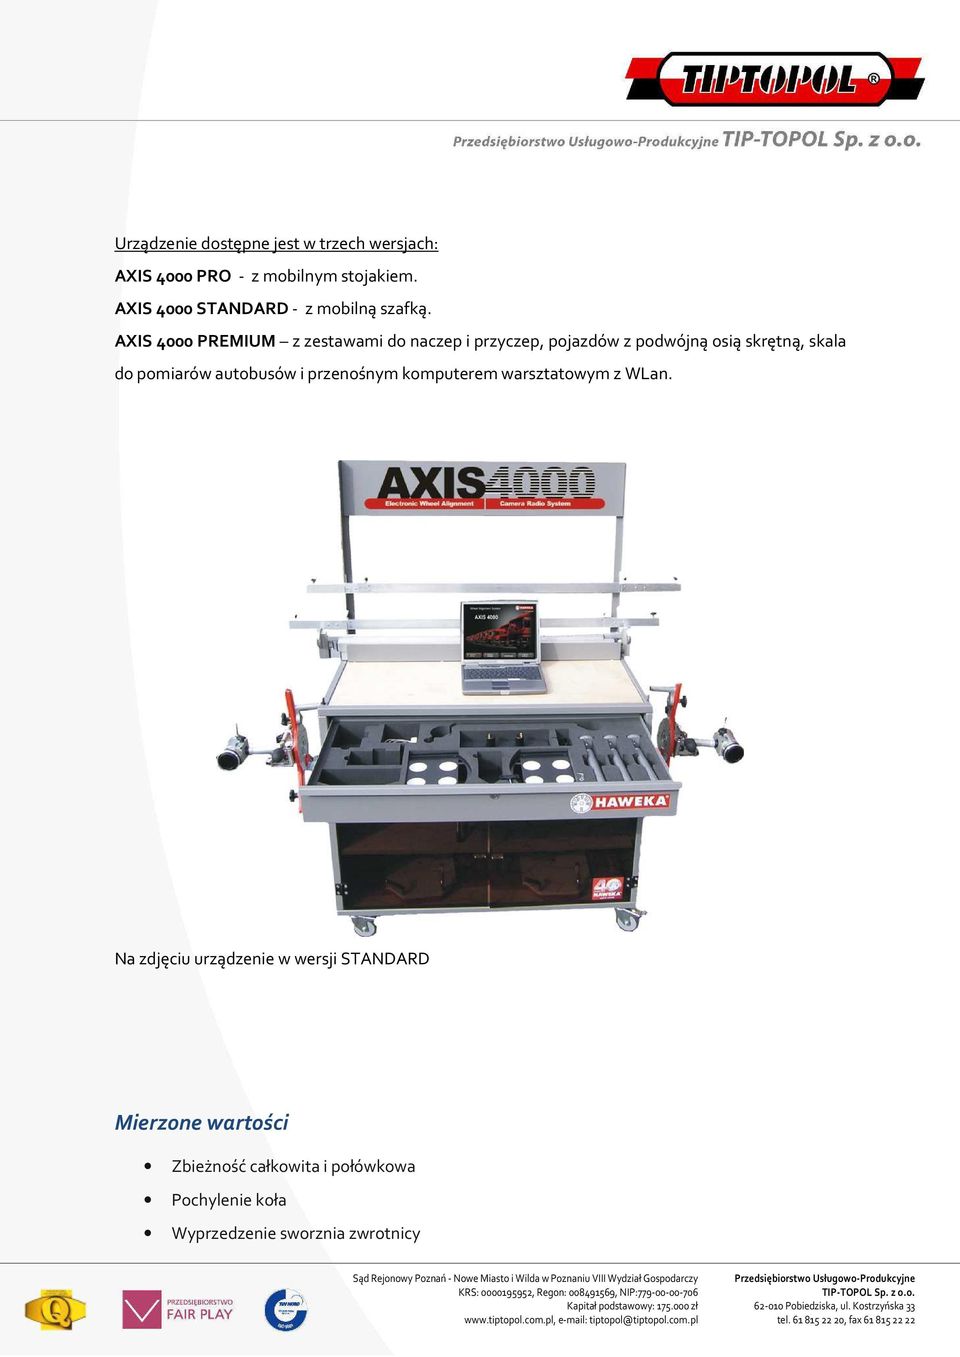 AXIS 4000 PREMIUM z zestawami do naczep i przyczep, pojazdów z podwójną osią skrętną, skala do pomiarów